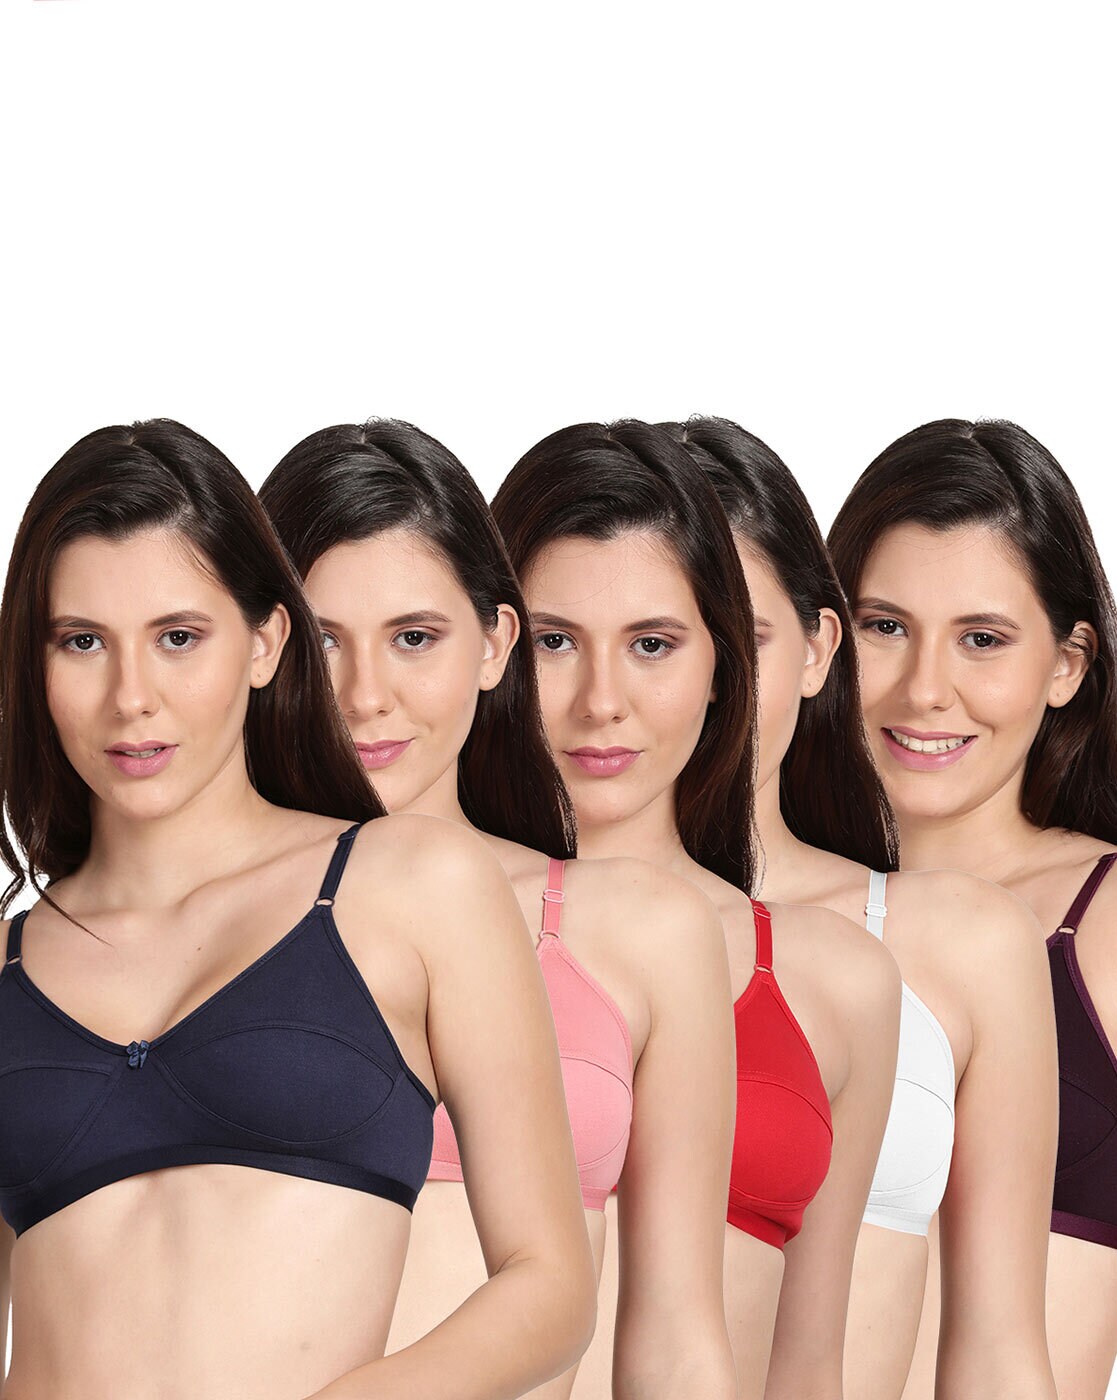 Buy Purple Bras for Women by SHYAWAY Online